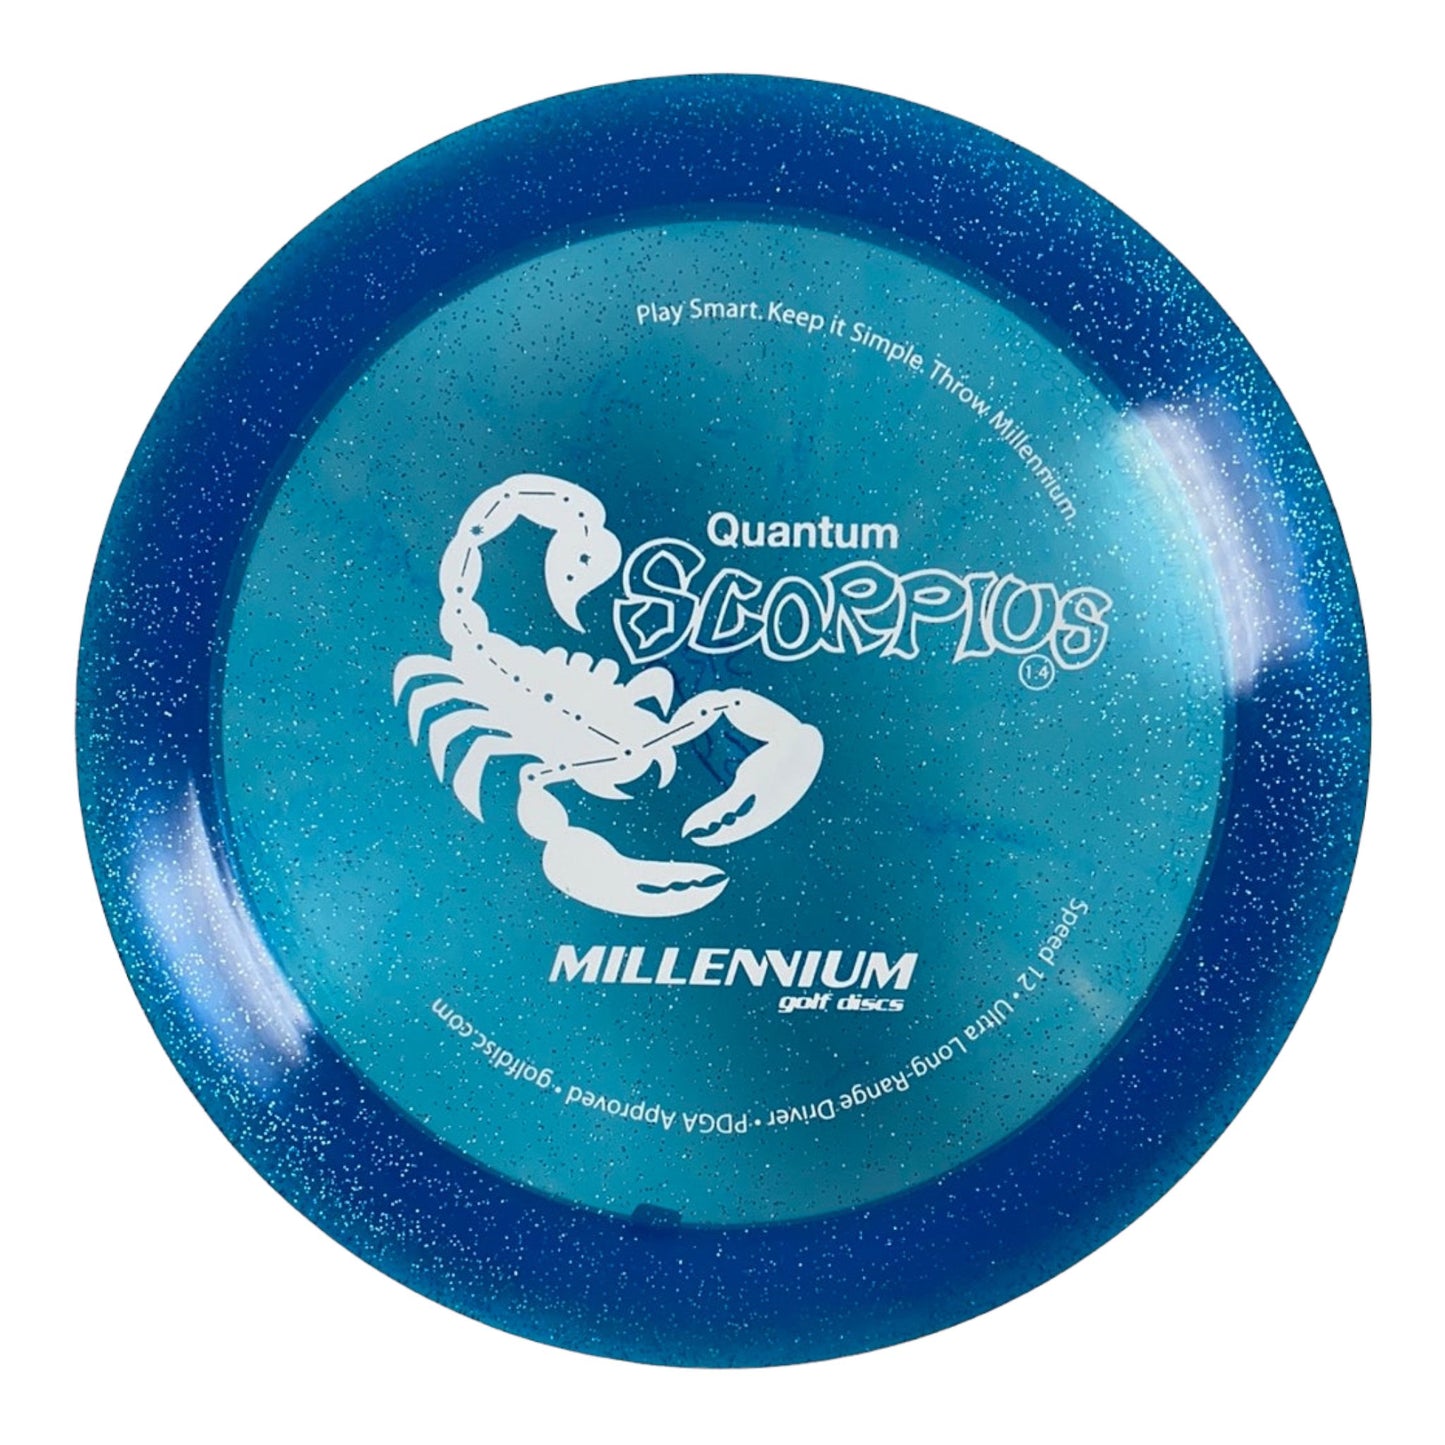 Millennium Golf Discs Scorpius | Quantum Stardust | Blue/White 169g Disc Golf